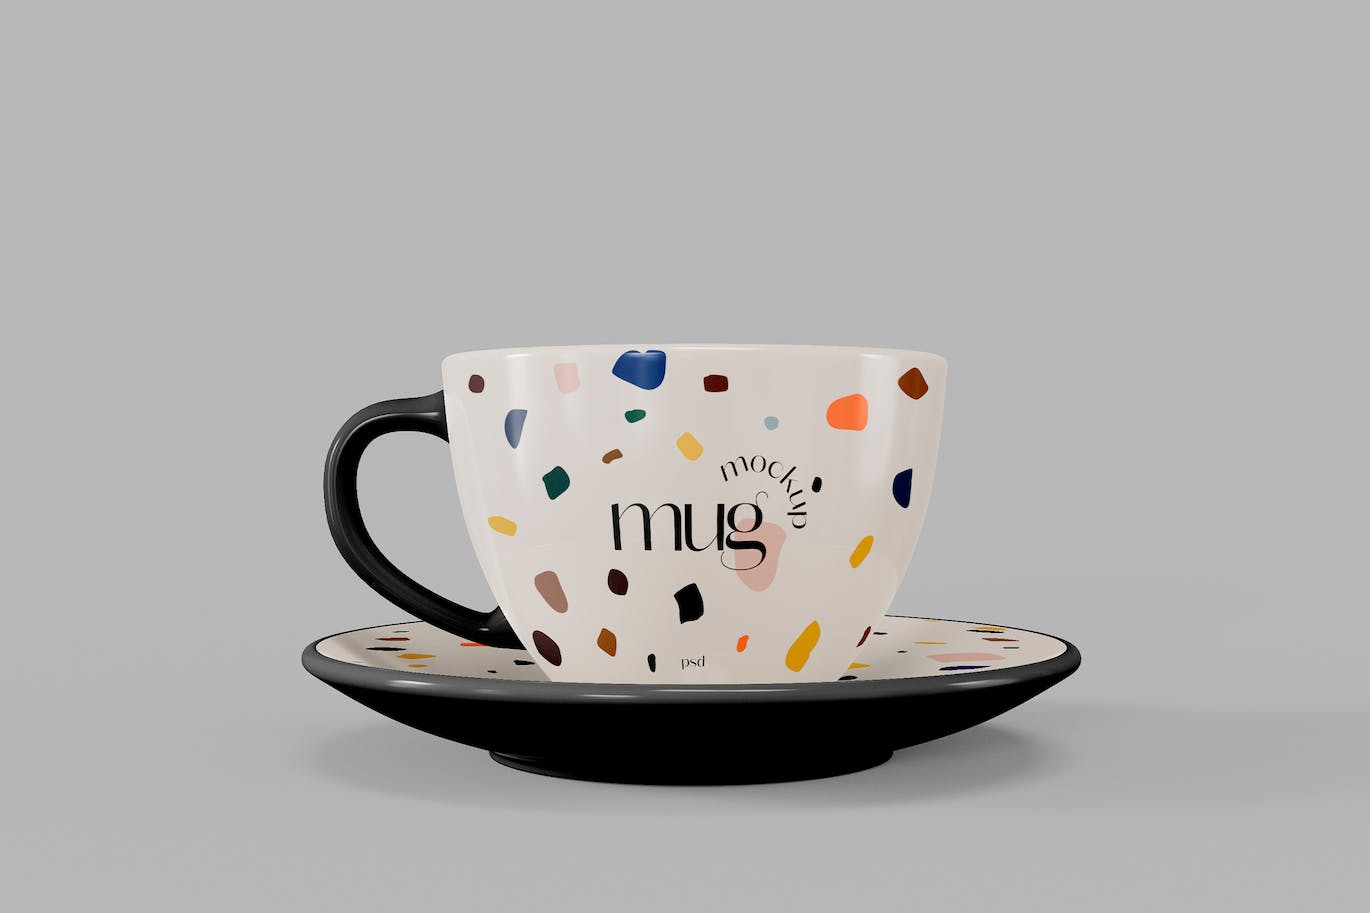 陶瓷咖啡马克杯杯身设计样机模板v3 Ceramic Mug Mockup 样机素材 第1张